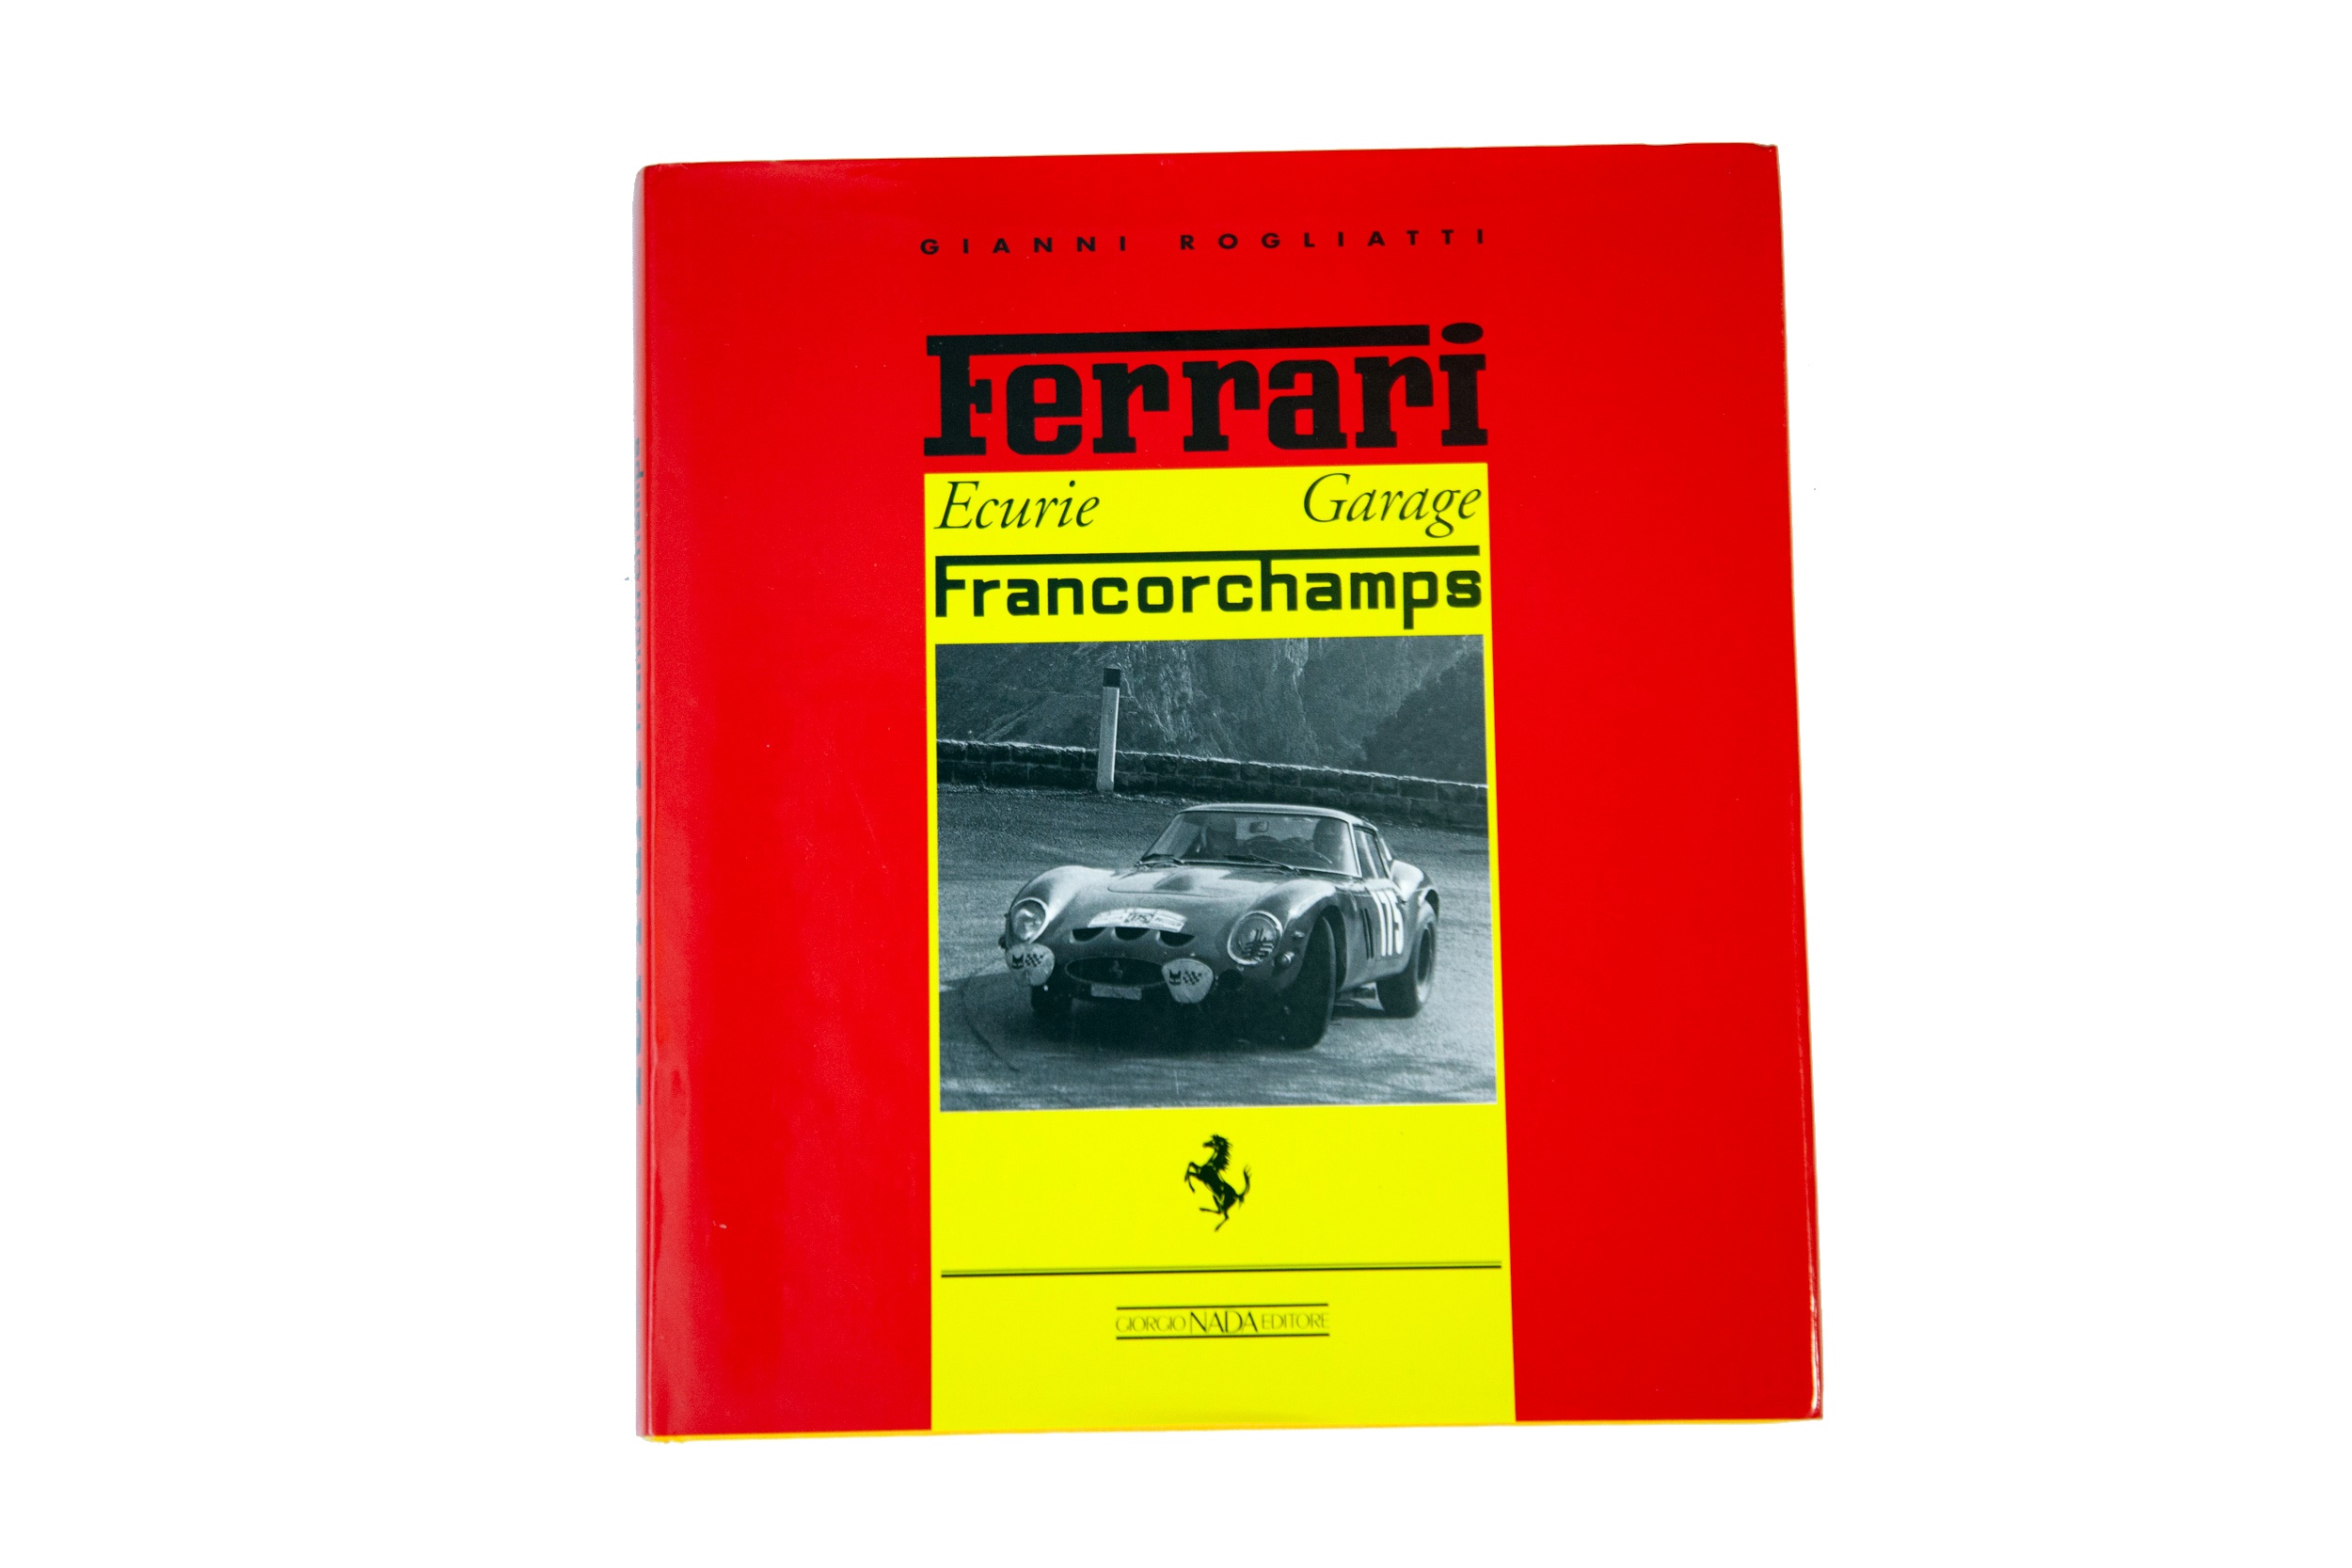 'Ferrari Ecurie Francorchamps' by Gianni Rogliatti 
No Reserve